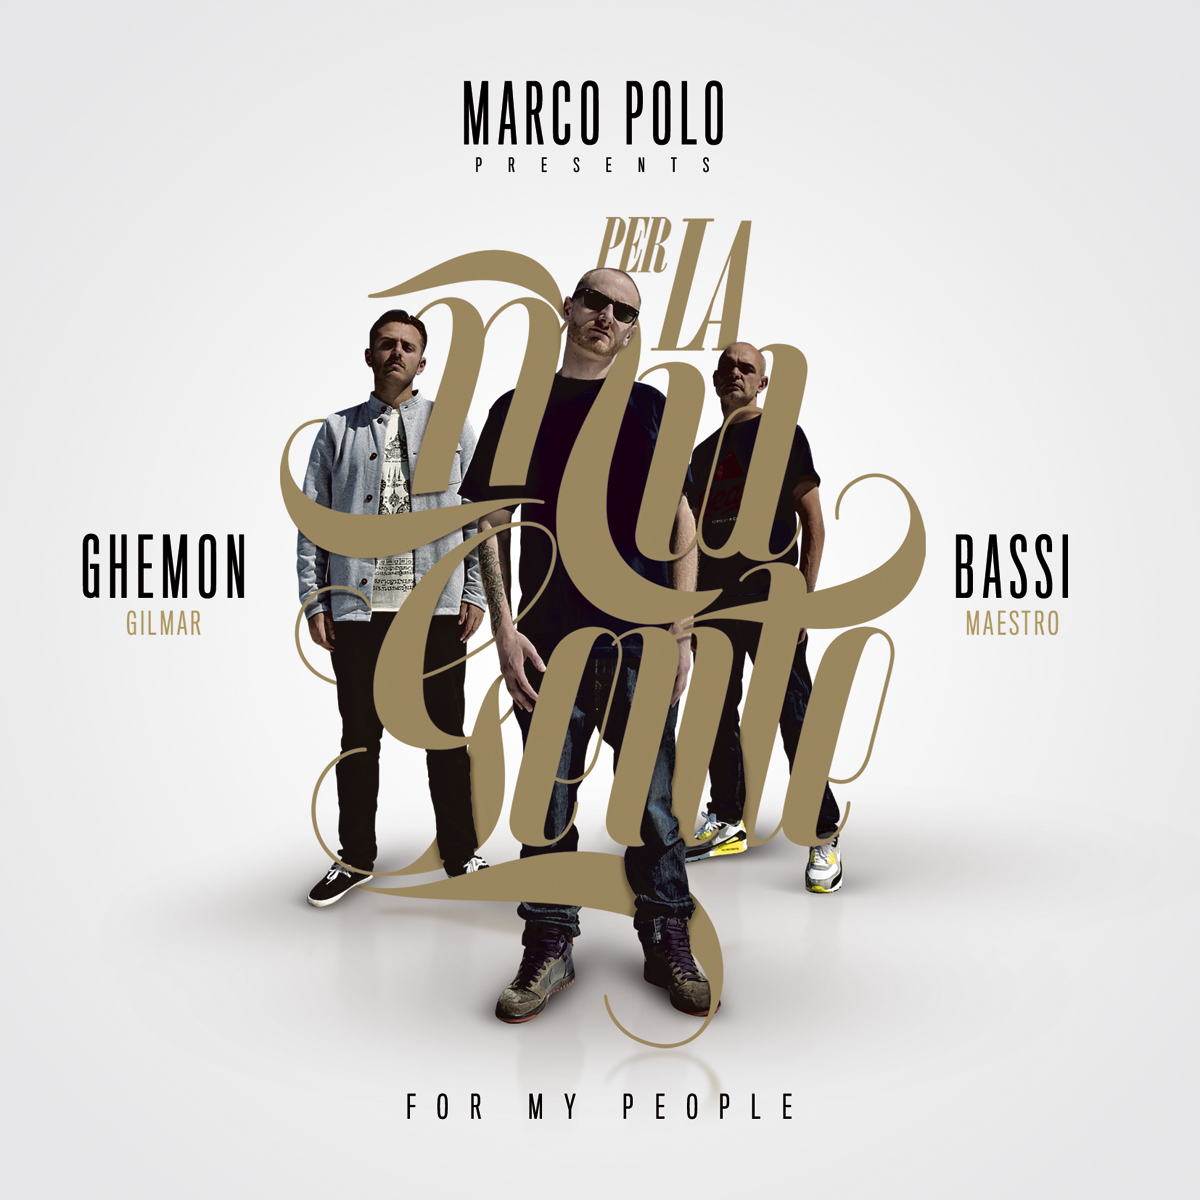 Marco Polo presents Bassi maestro and Ghemon Gilmar - Per la mia gente (For my people)